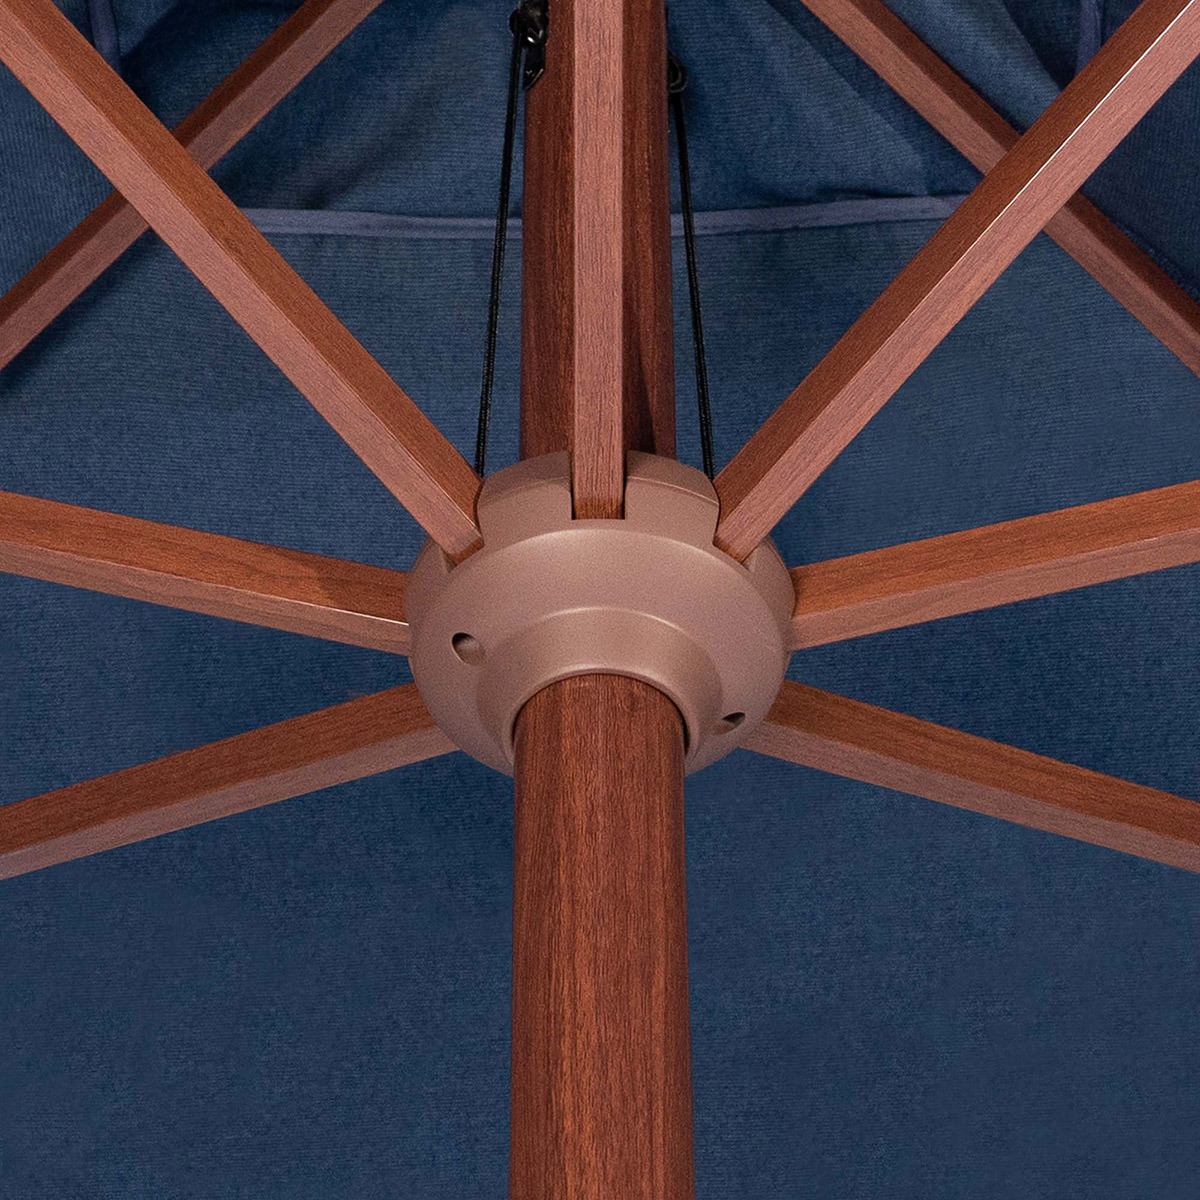 앳레저 사각 마켓 우산, 지름 3.0m 블루